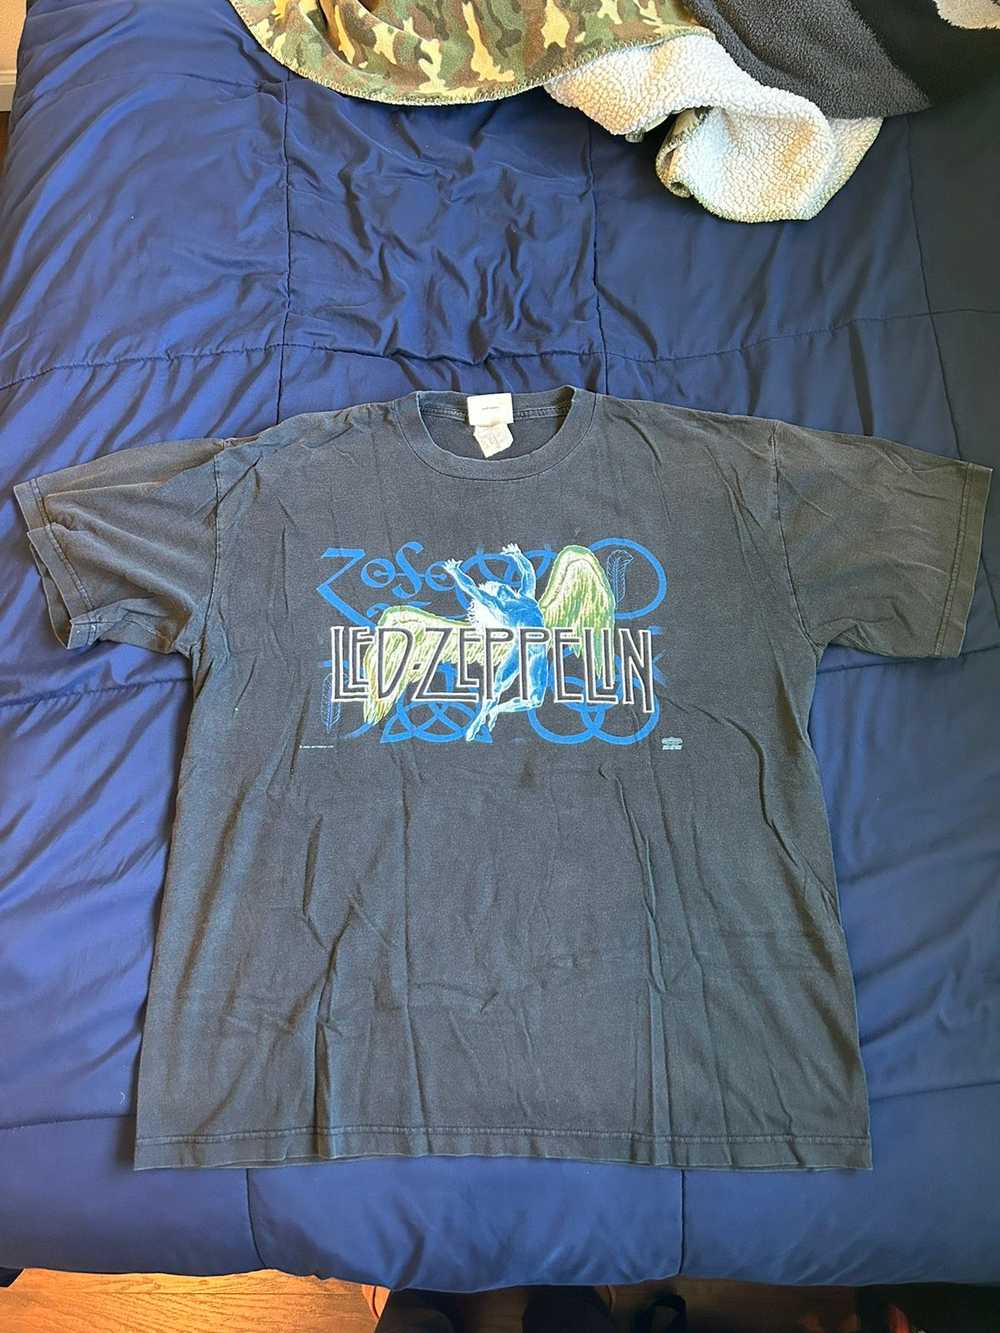 Led Zeppelin Led Zeppelin t-shirt - image 1